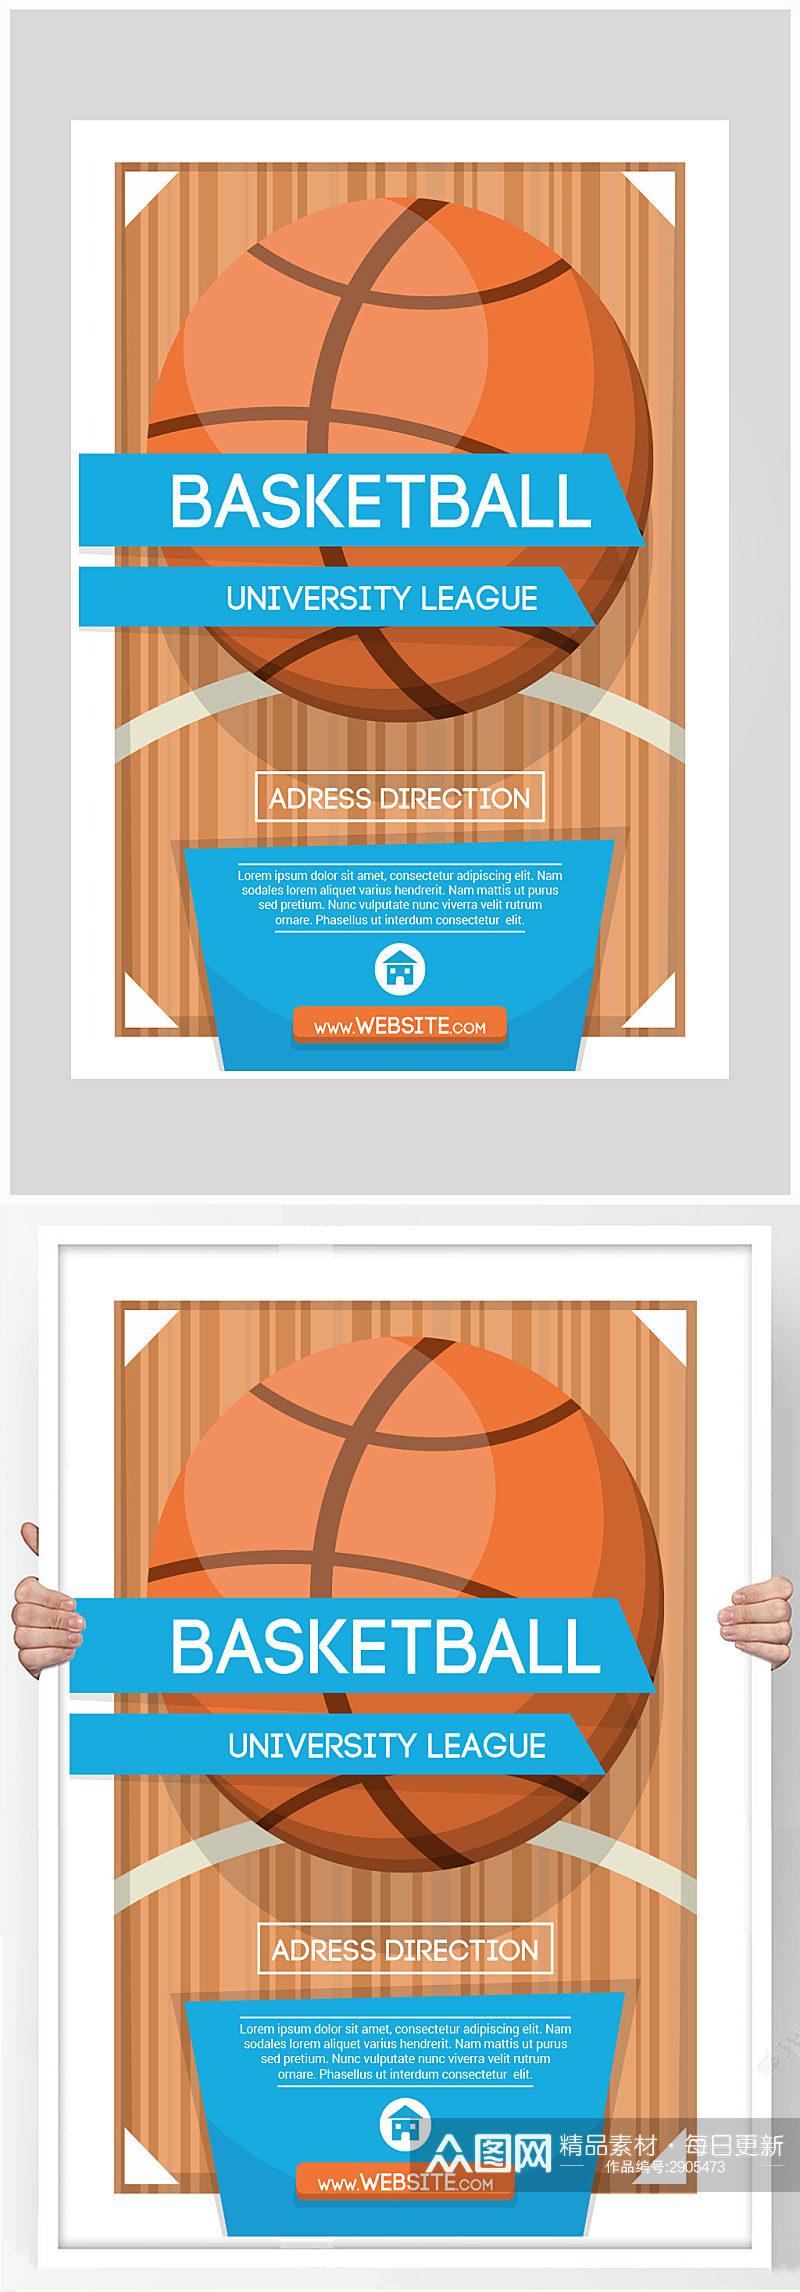 矢量大气篮球比赛海报设计素材